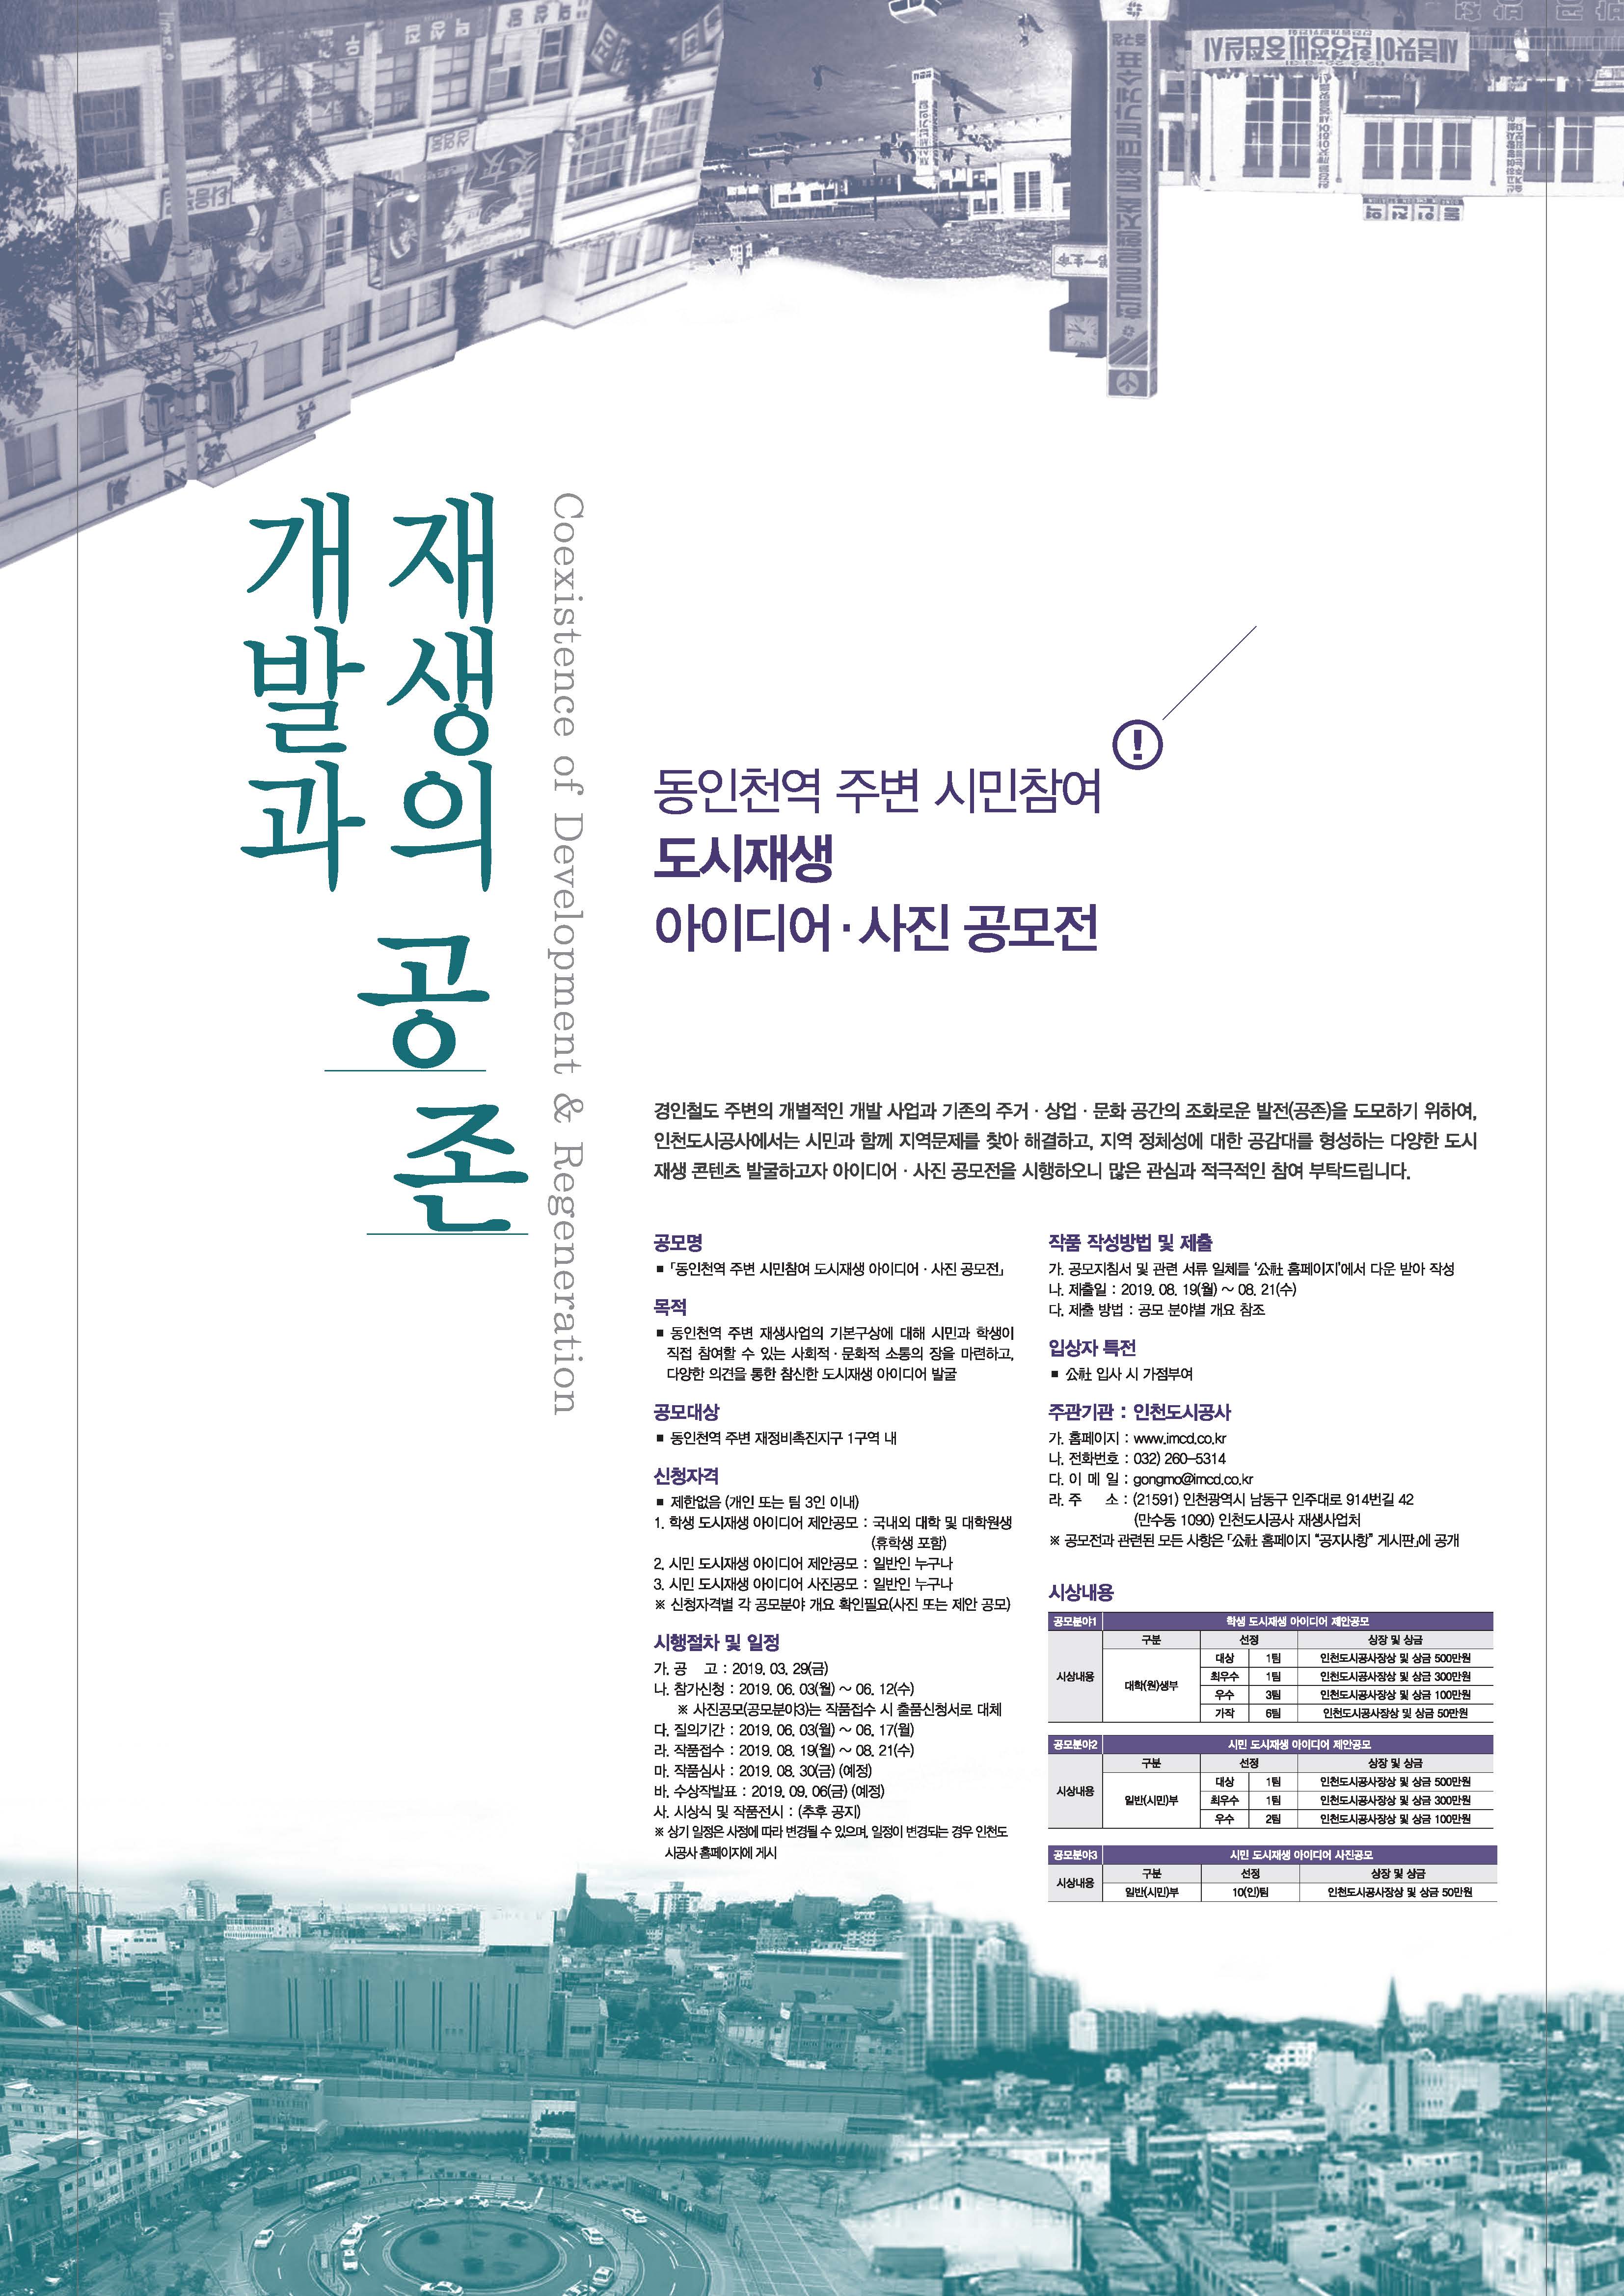  동인천역 아이디어 공모 포스터.jpg